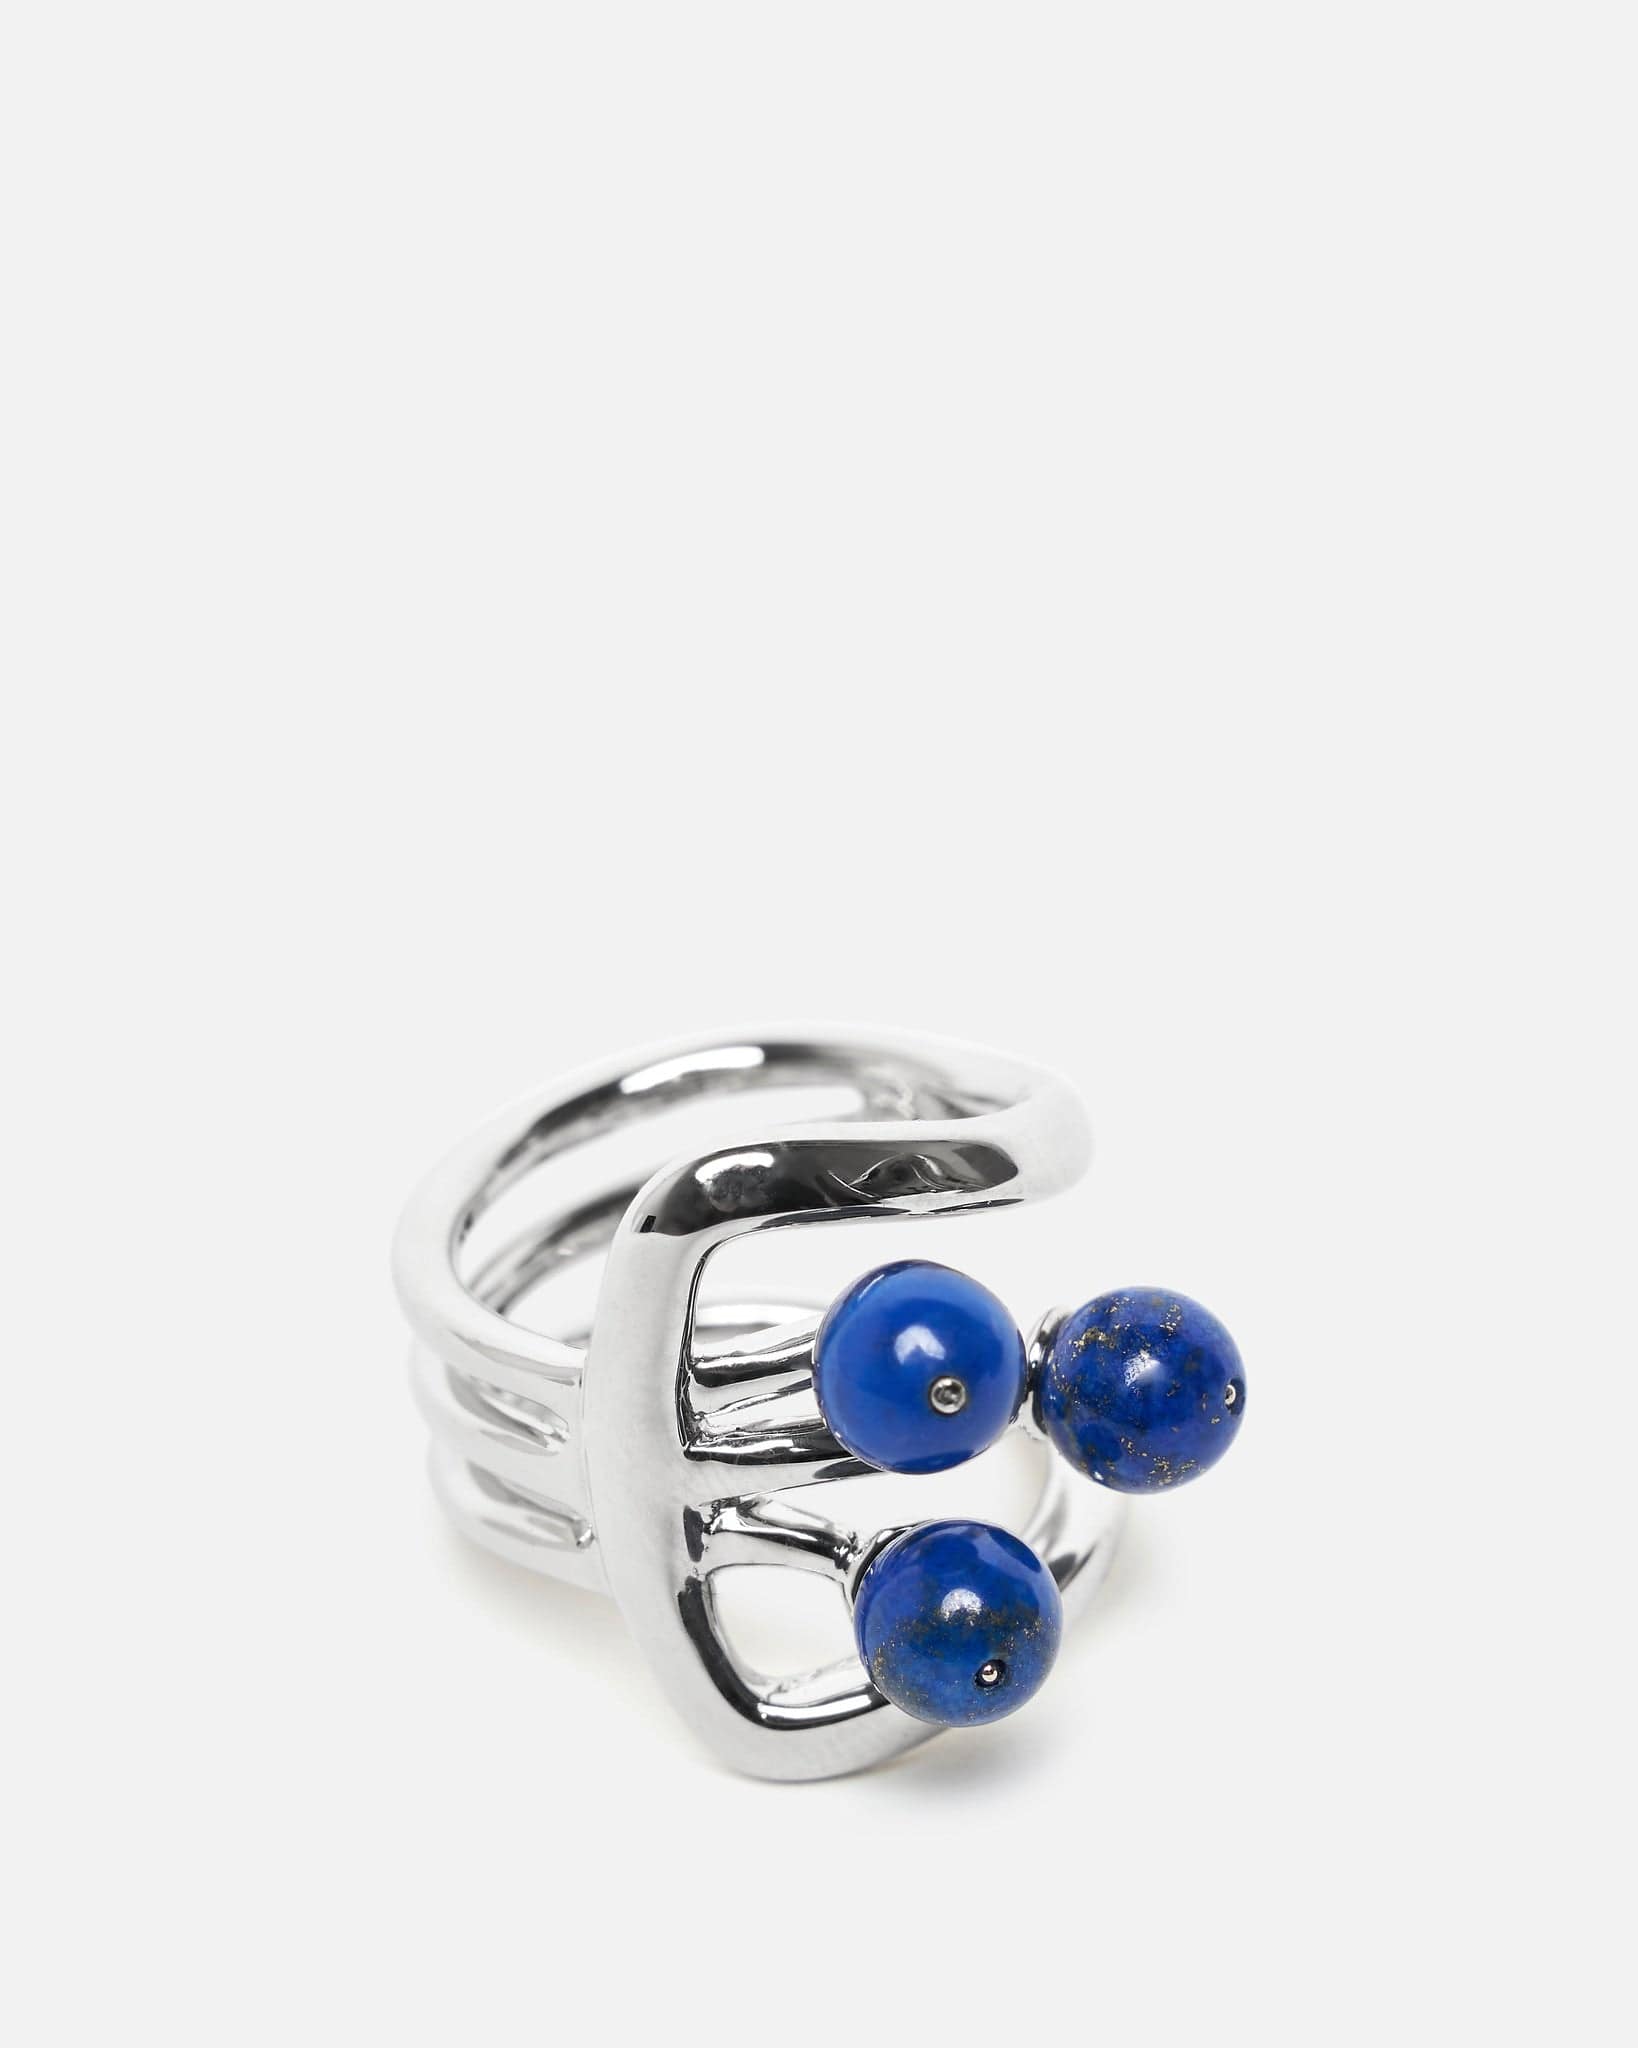 Niccolò Pasqualetti Jewelry Archetipo Ring in Blue